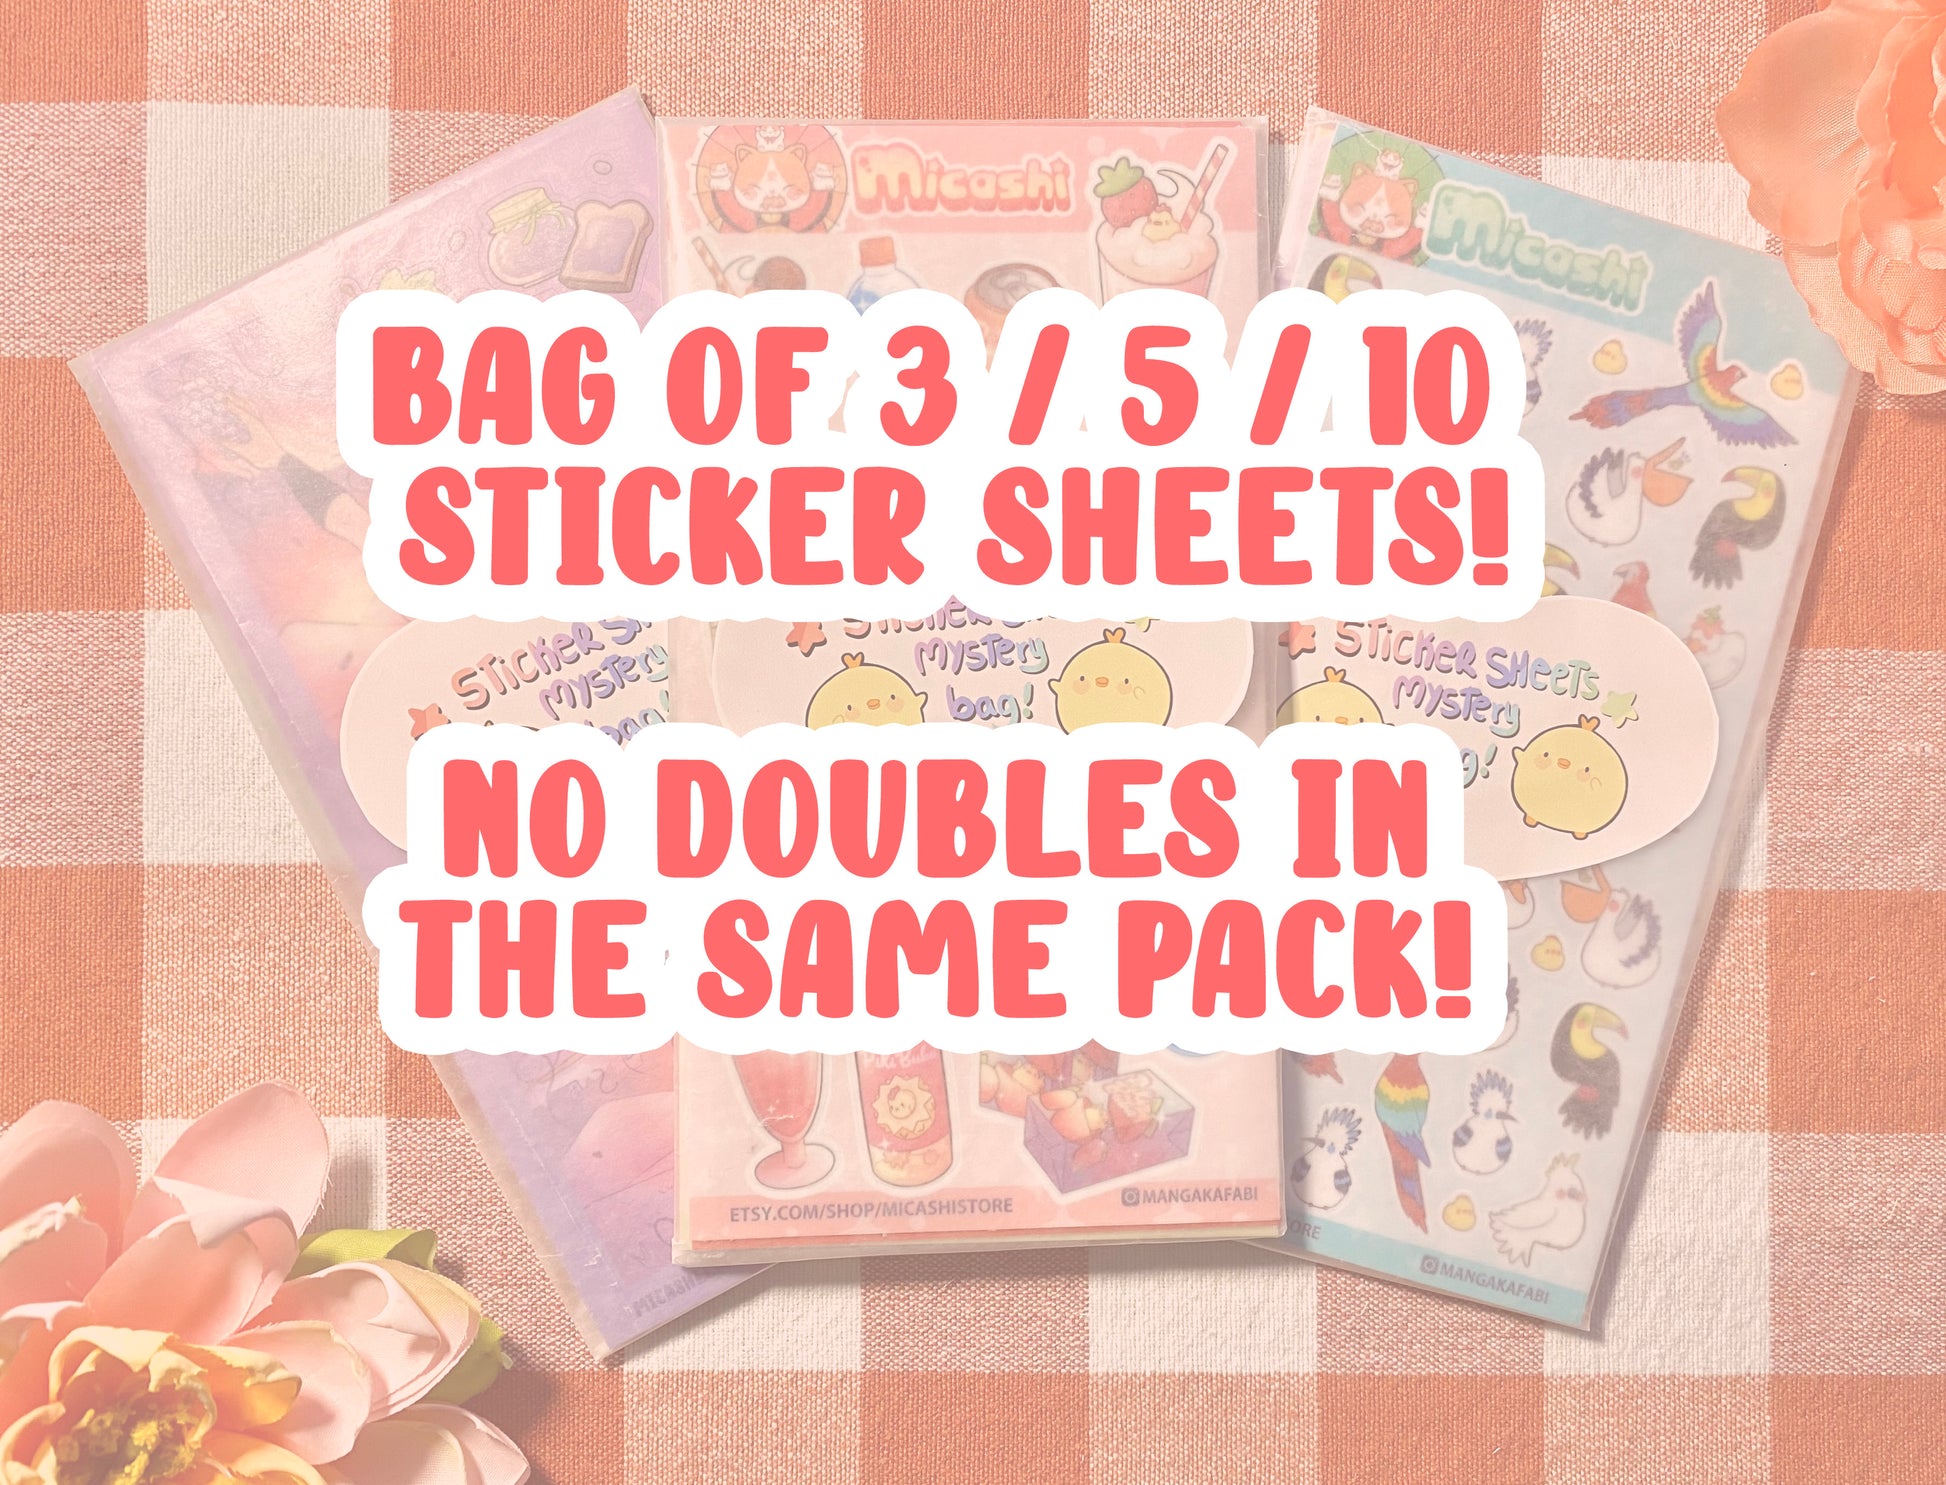 Random Kawaii Sticker Pack, Kawaii Sticker Pack, Mystery Sticker Pack, Cute  Sticker Pack, Vinyl Sticker Pack, Sticker Pack 